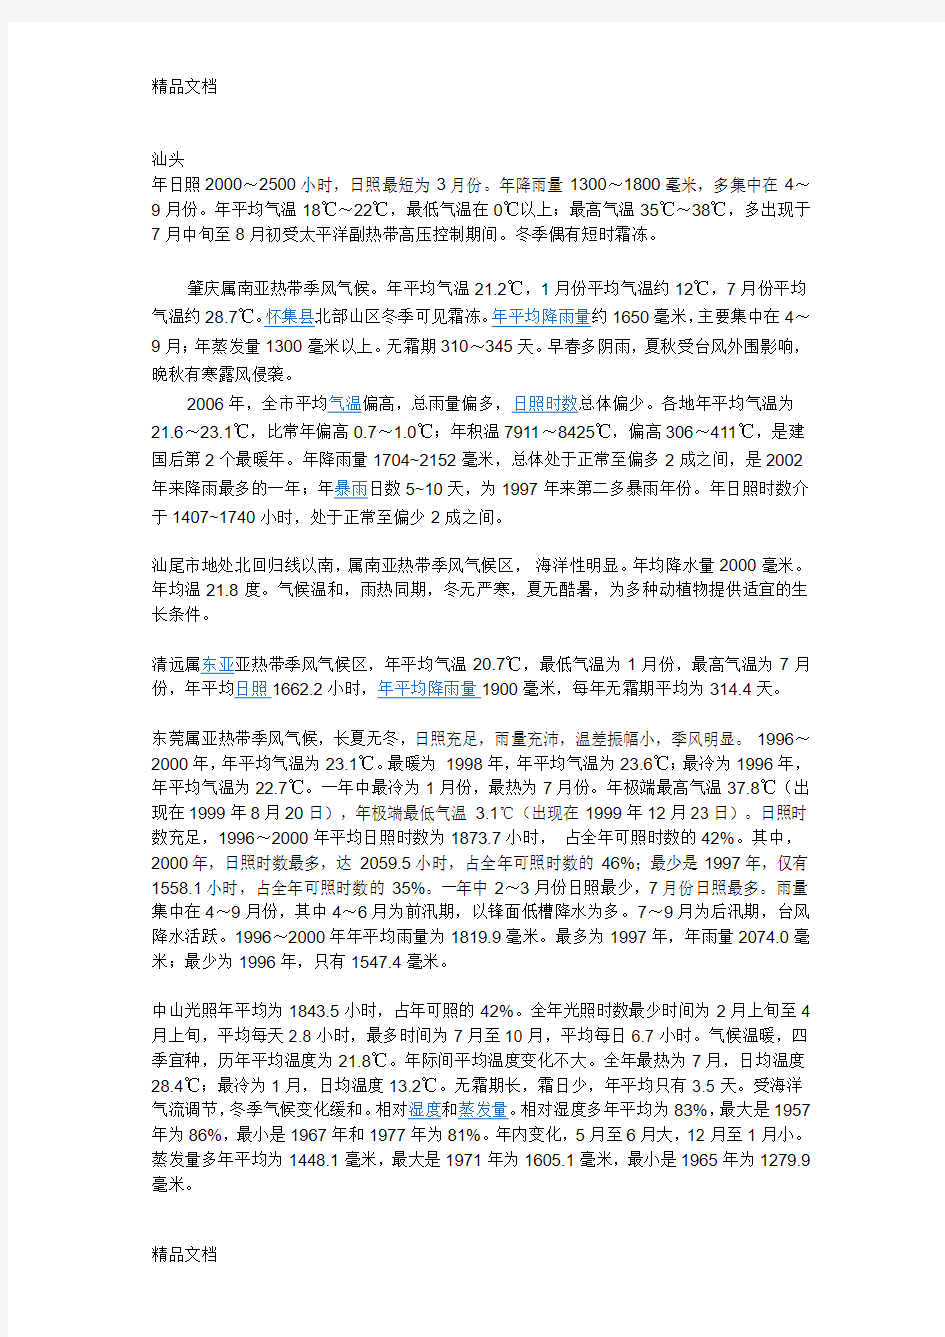 最新广东省各气候类型特点资料